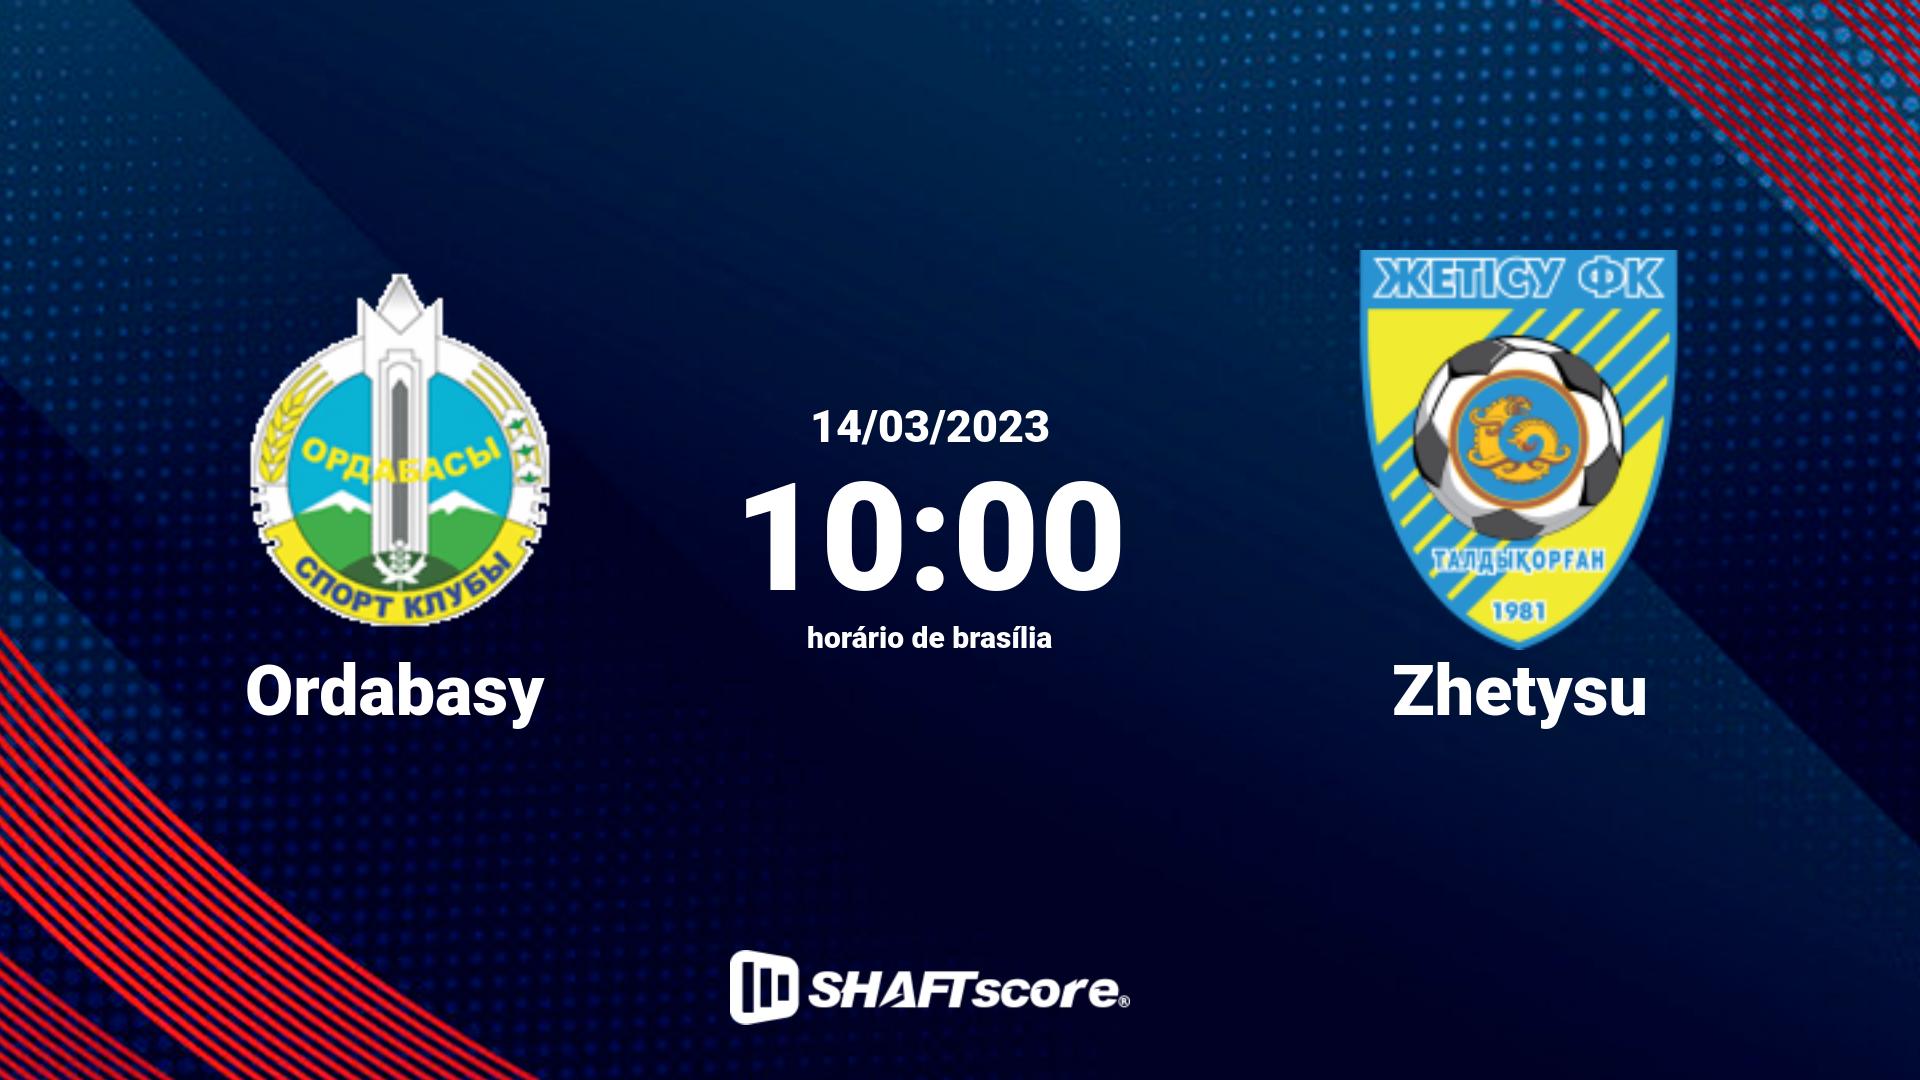 Estatísticas do jogo Ordabasy vs Zhetysu 14.03 10:00